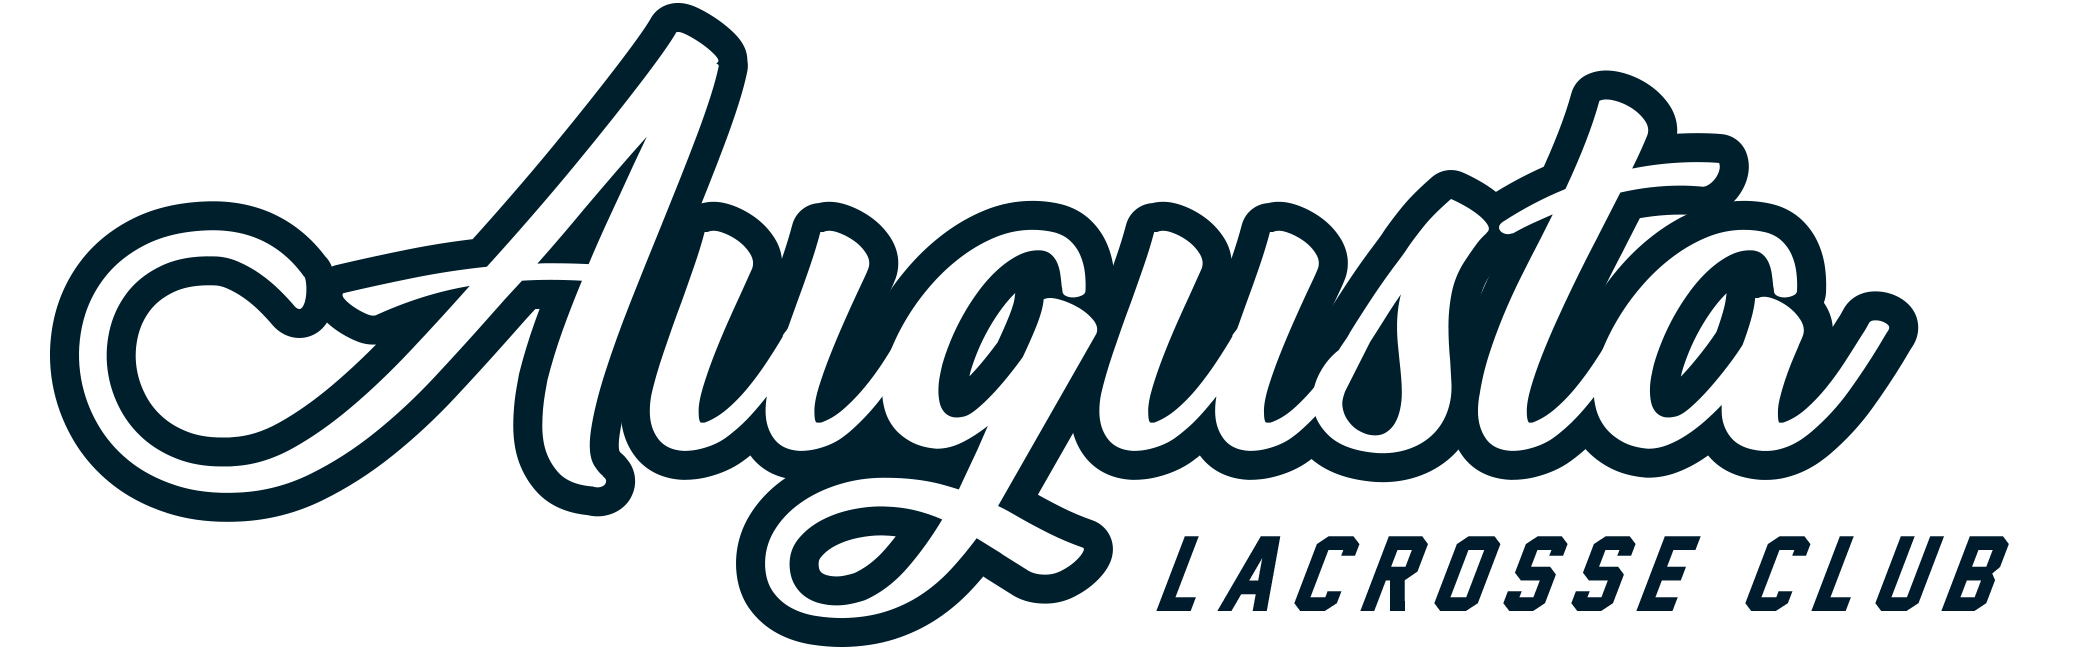 Augusta Lacrosse Club, Inc.